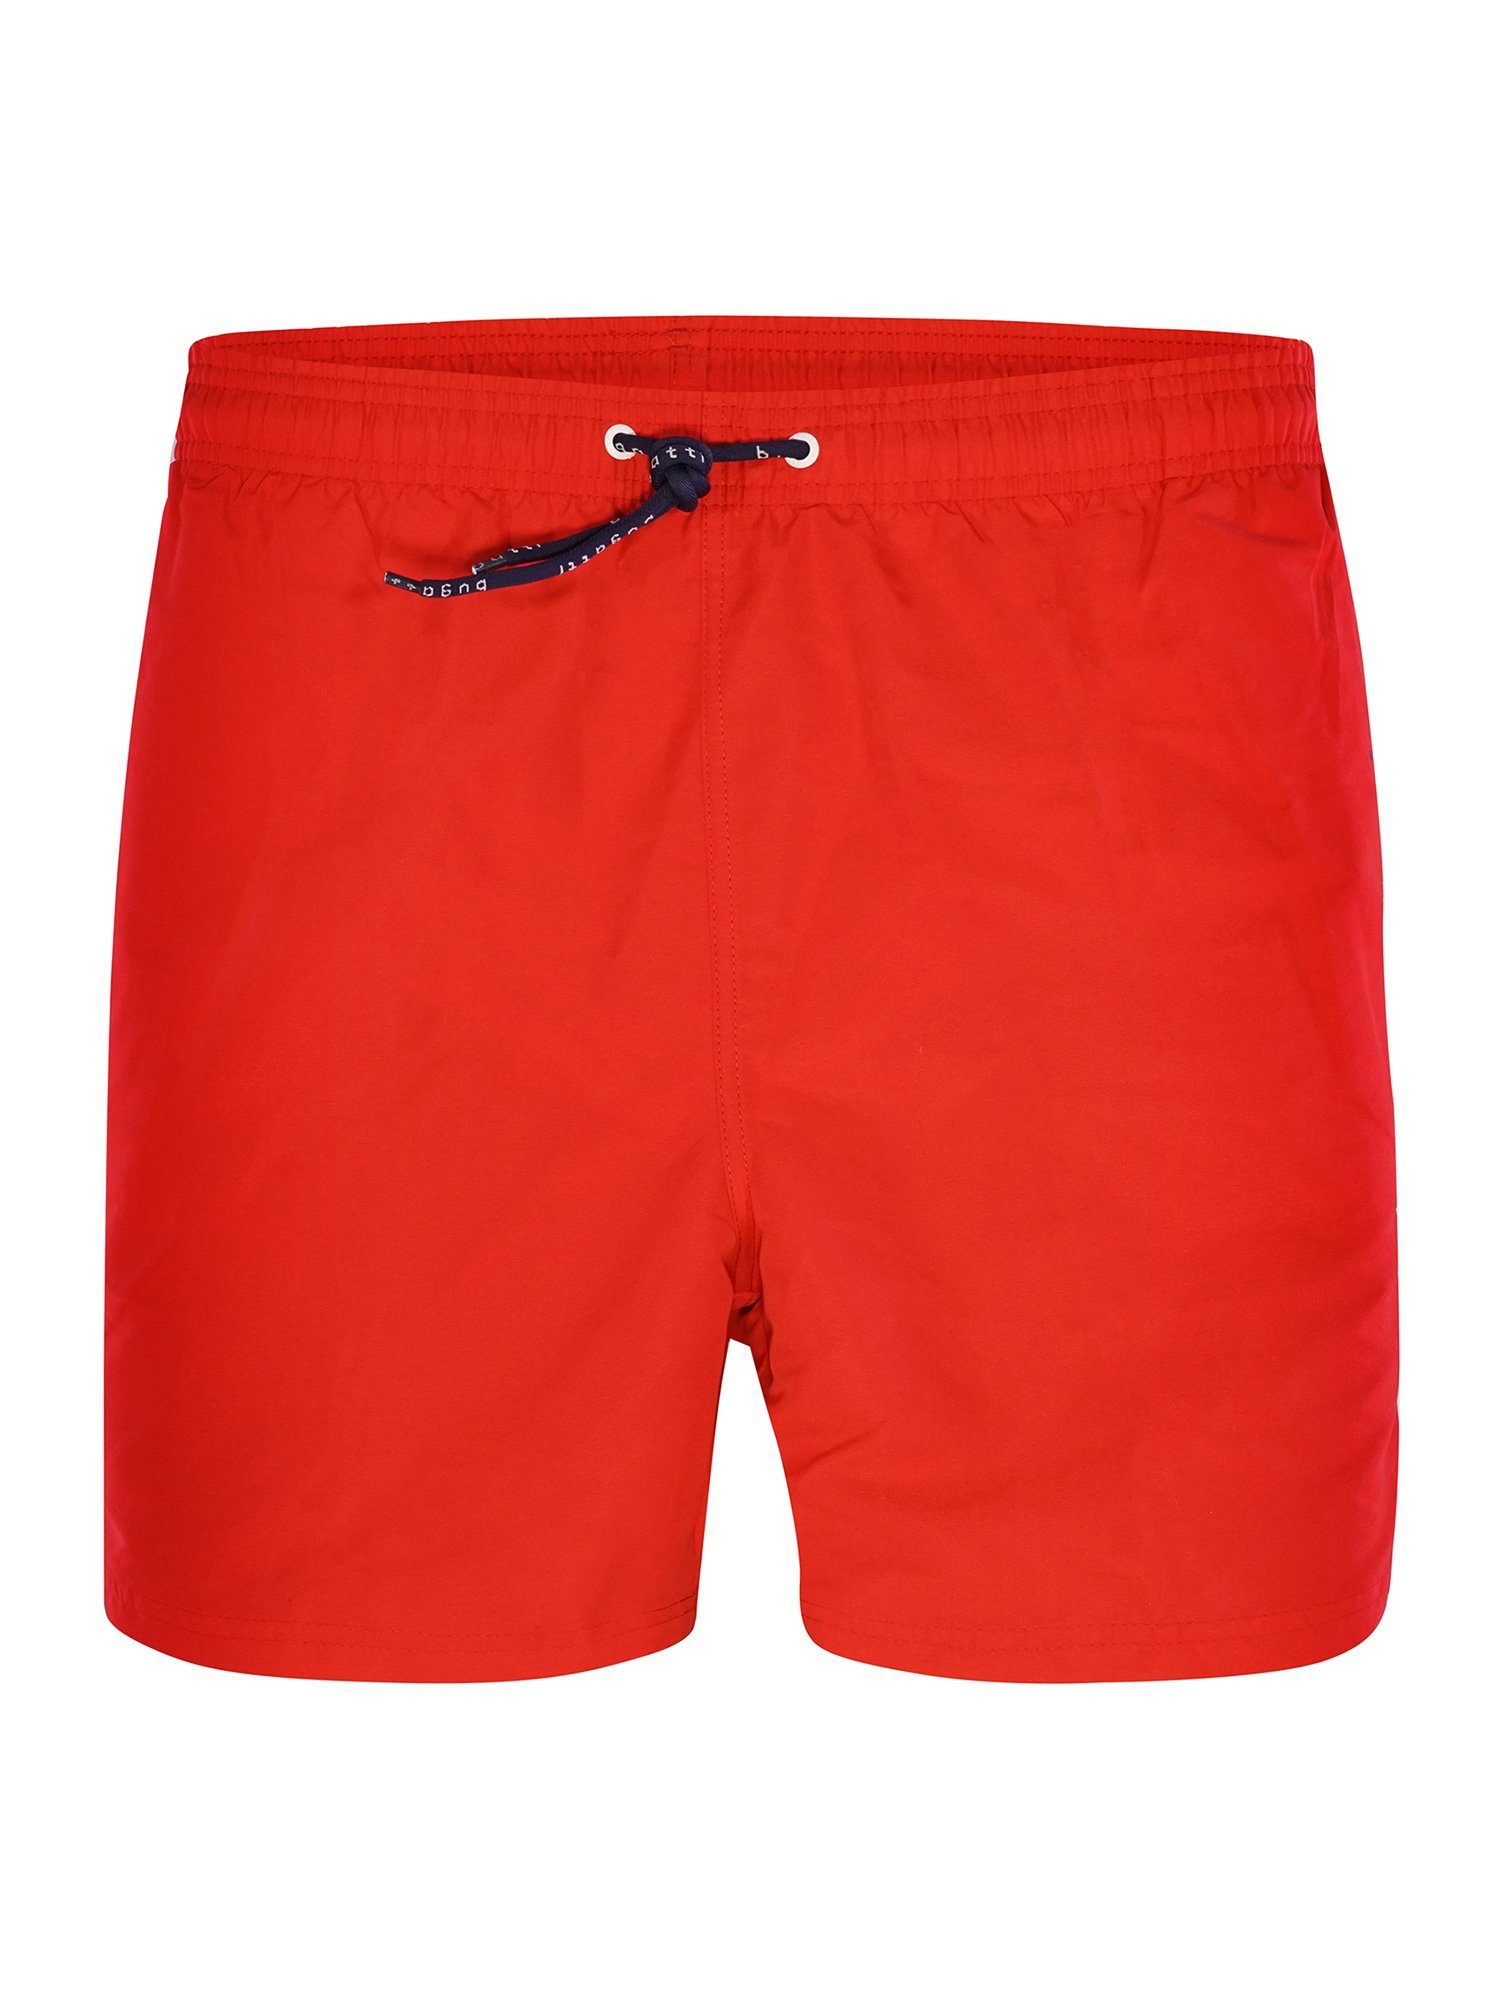 GENNO Badeshorts bugatti red-tomato Beachwear